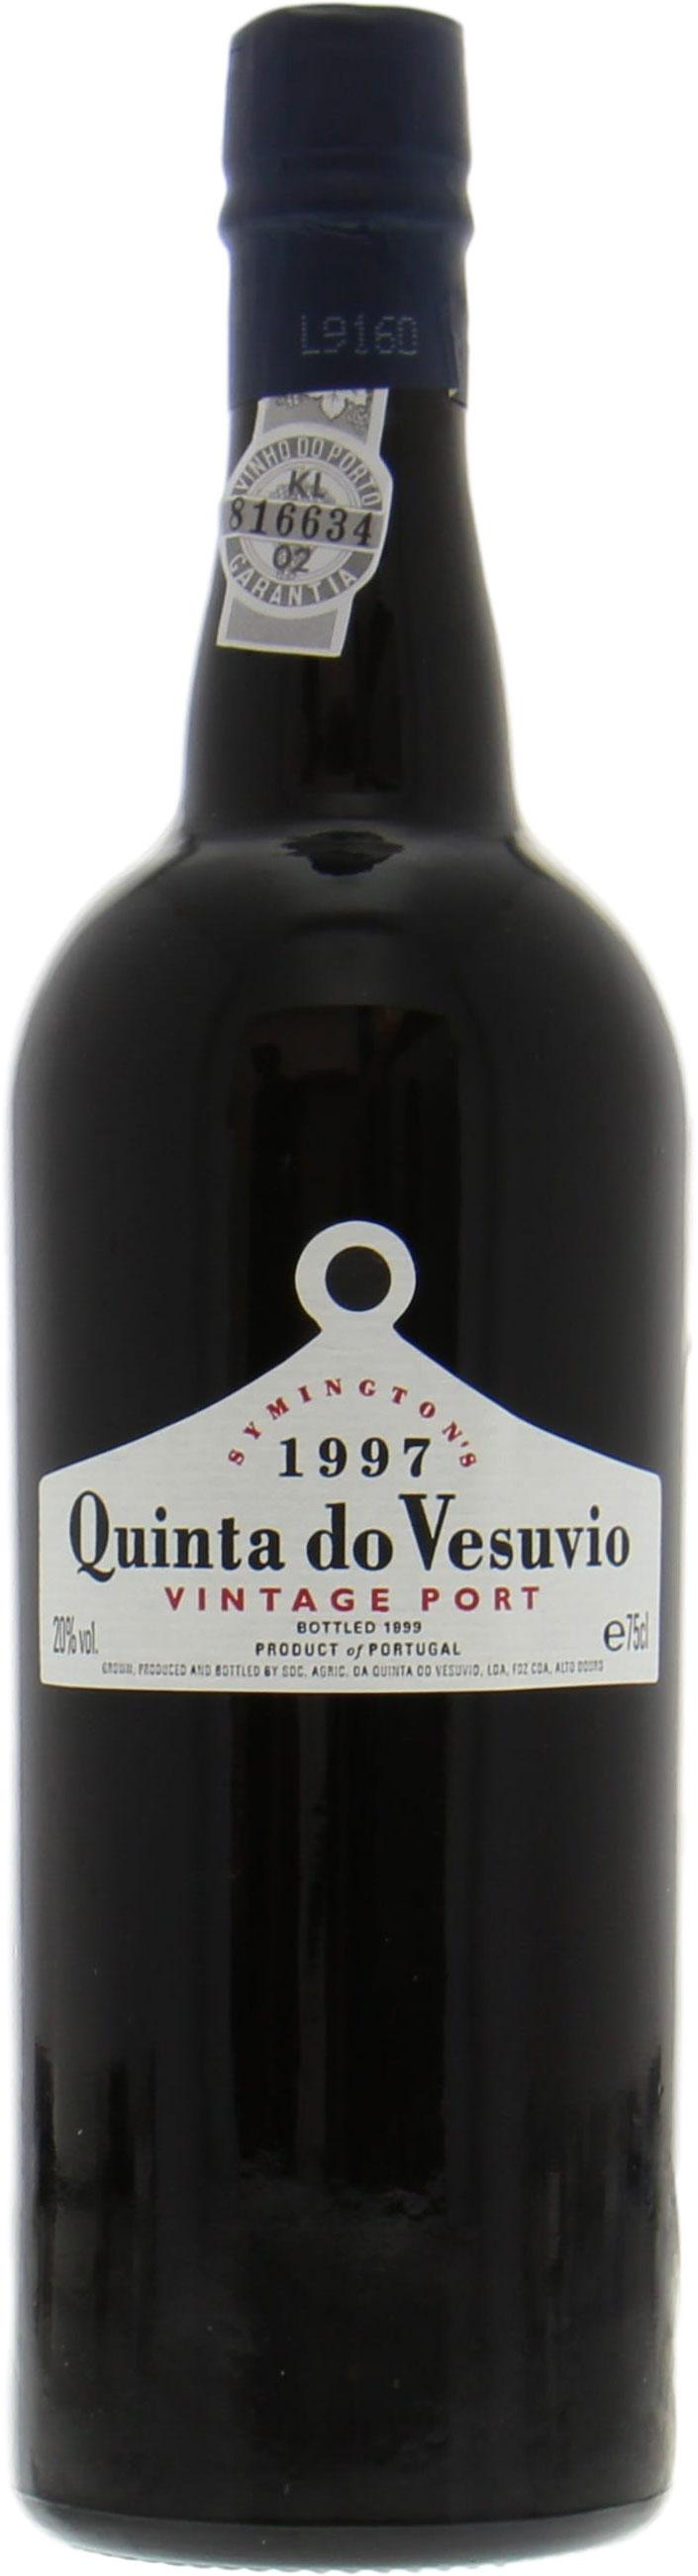 Quinta do Vesuvio - Vintage Port 1997 Perfect